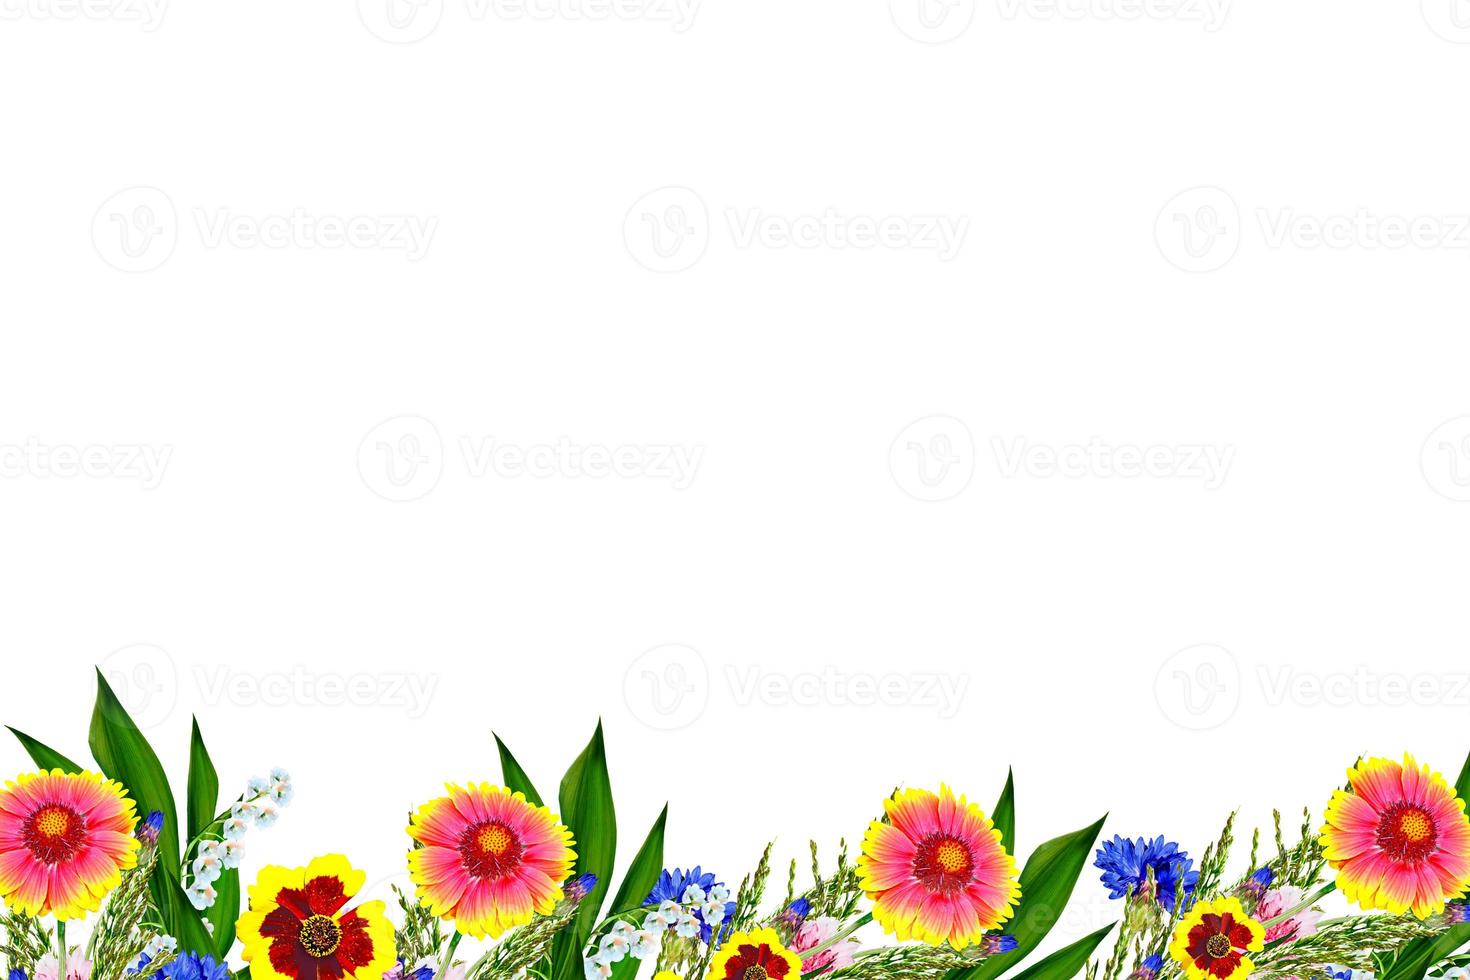 Strauß bunter Blumen von Gaillardia. zarte Blumen isoliert auf weißem Hintergrund foto